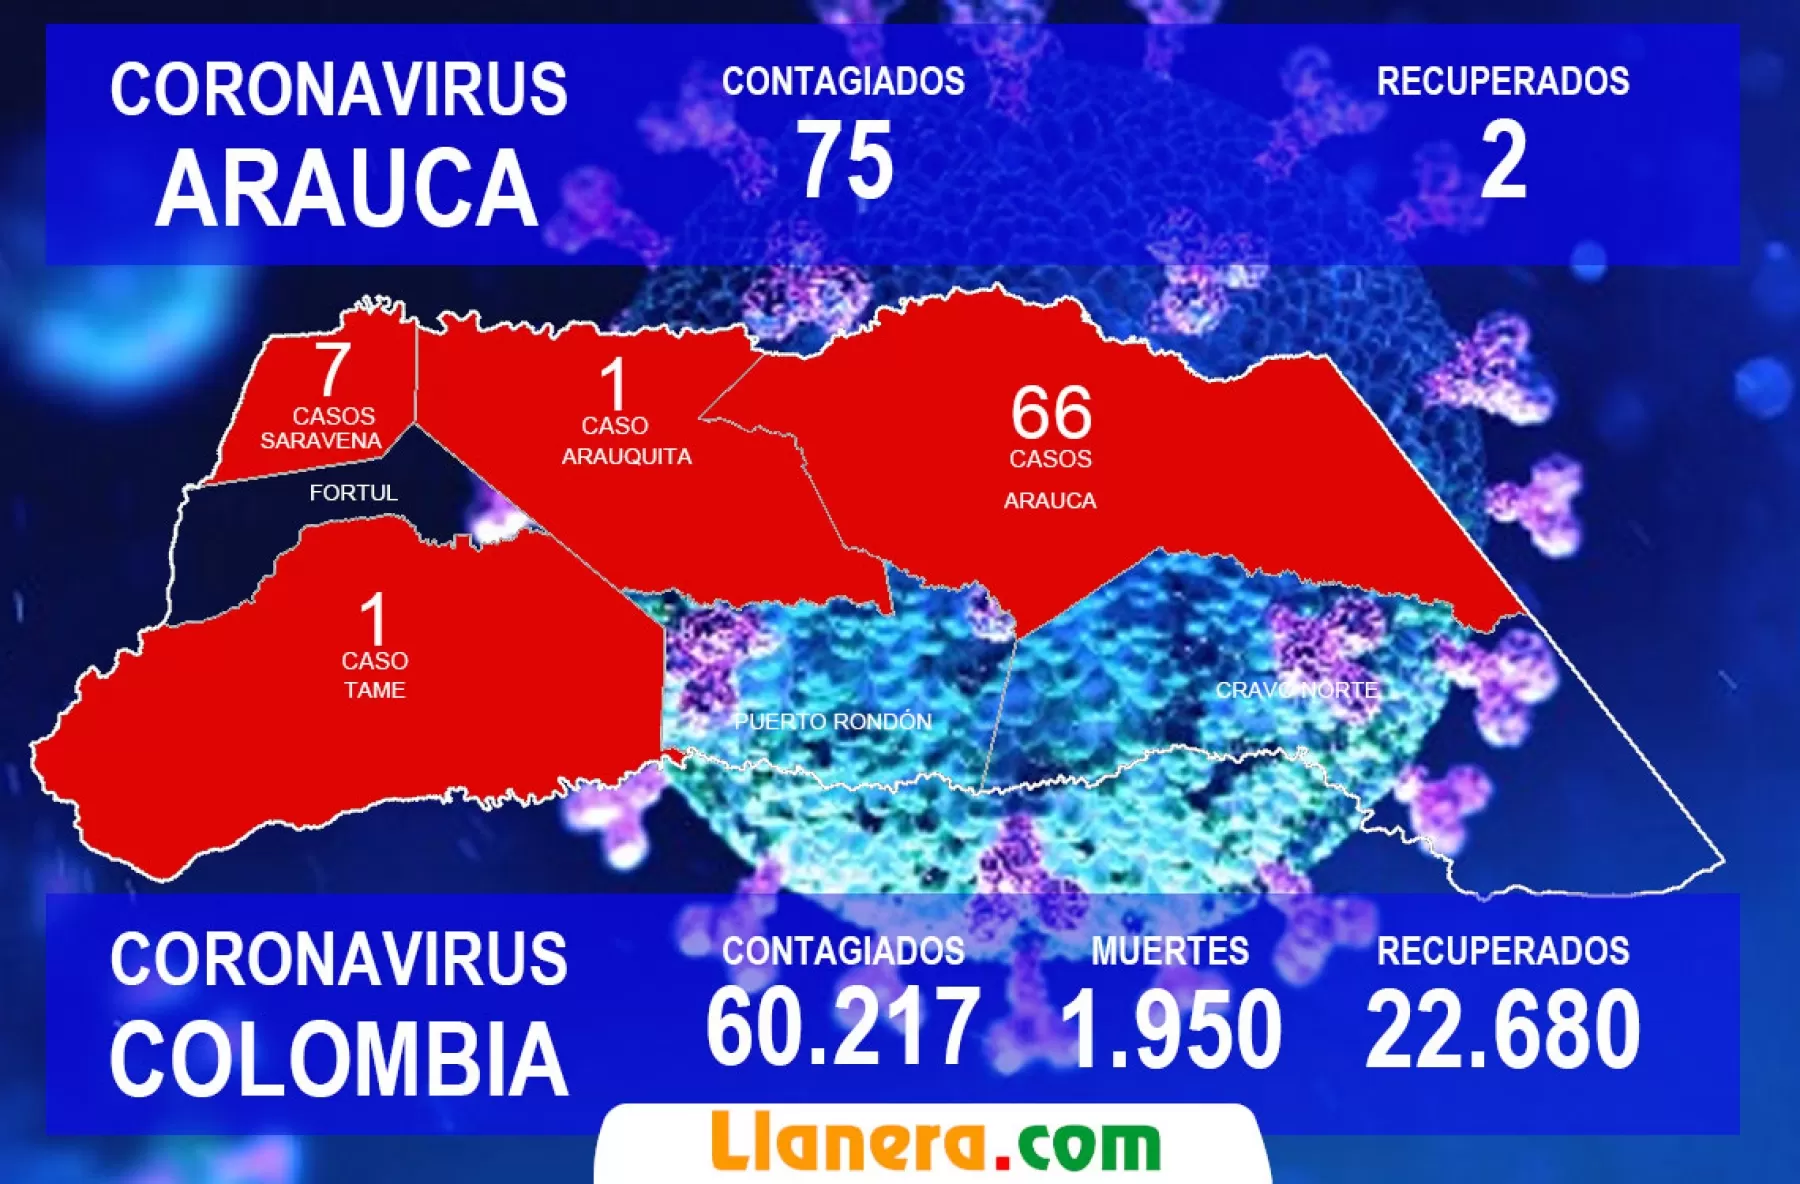 8 casos nuevos de Covid-19 reportaron las autoridades de salud para el departamento de Arauca, siete en el municpio de Arauca y uno en Saravena.